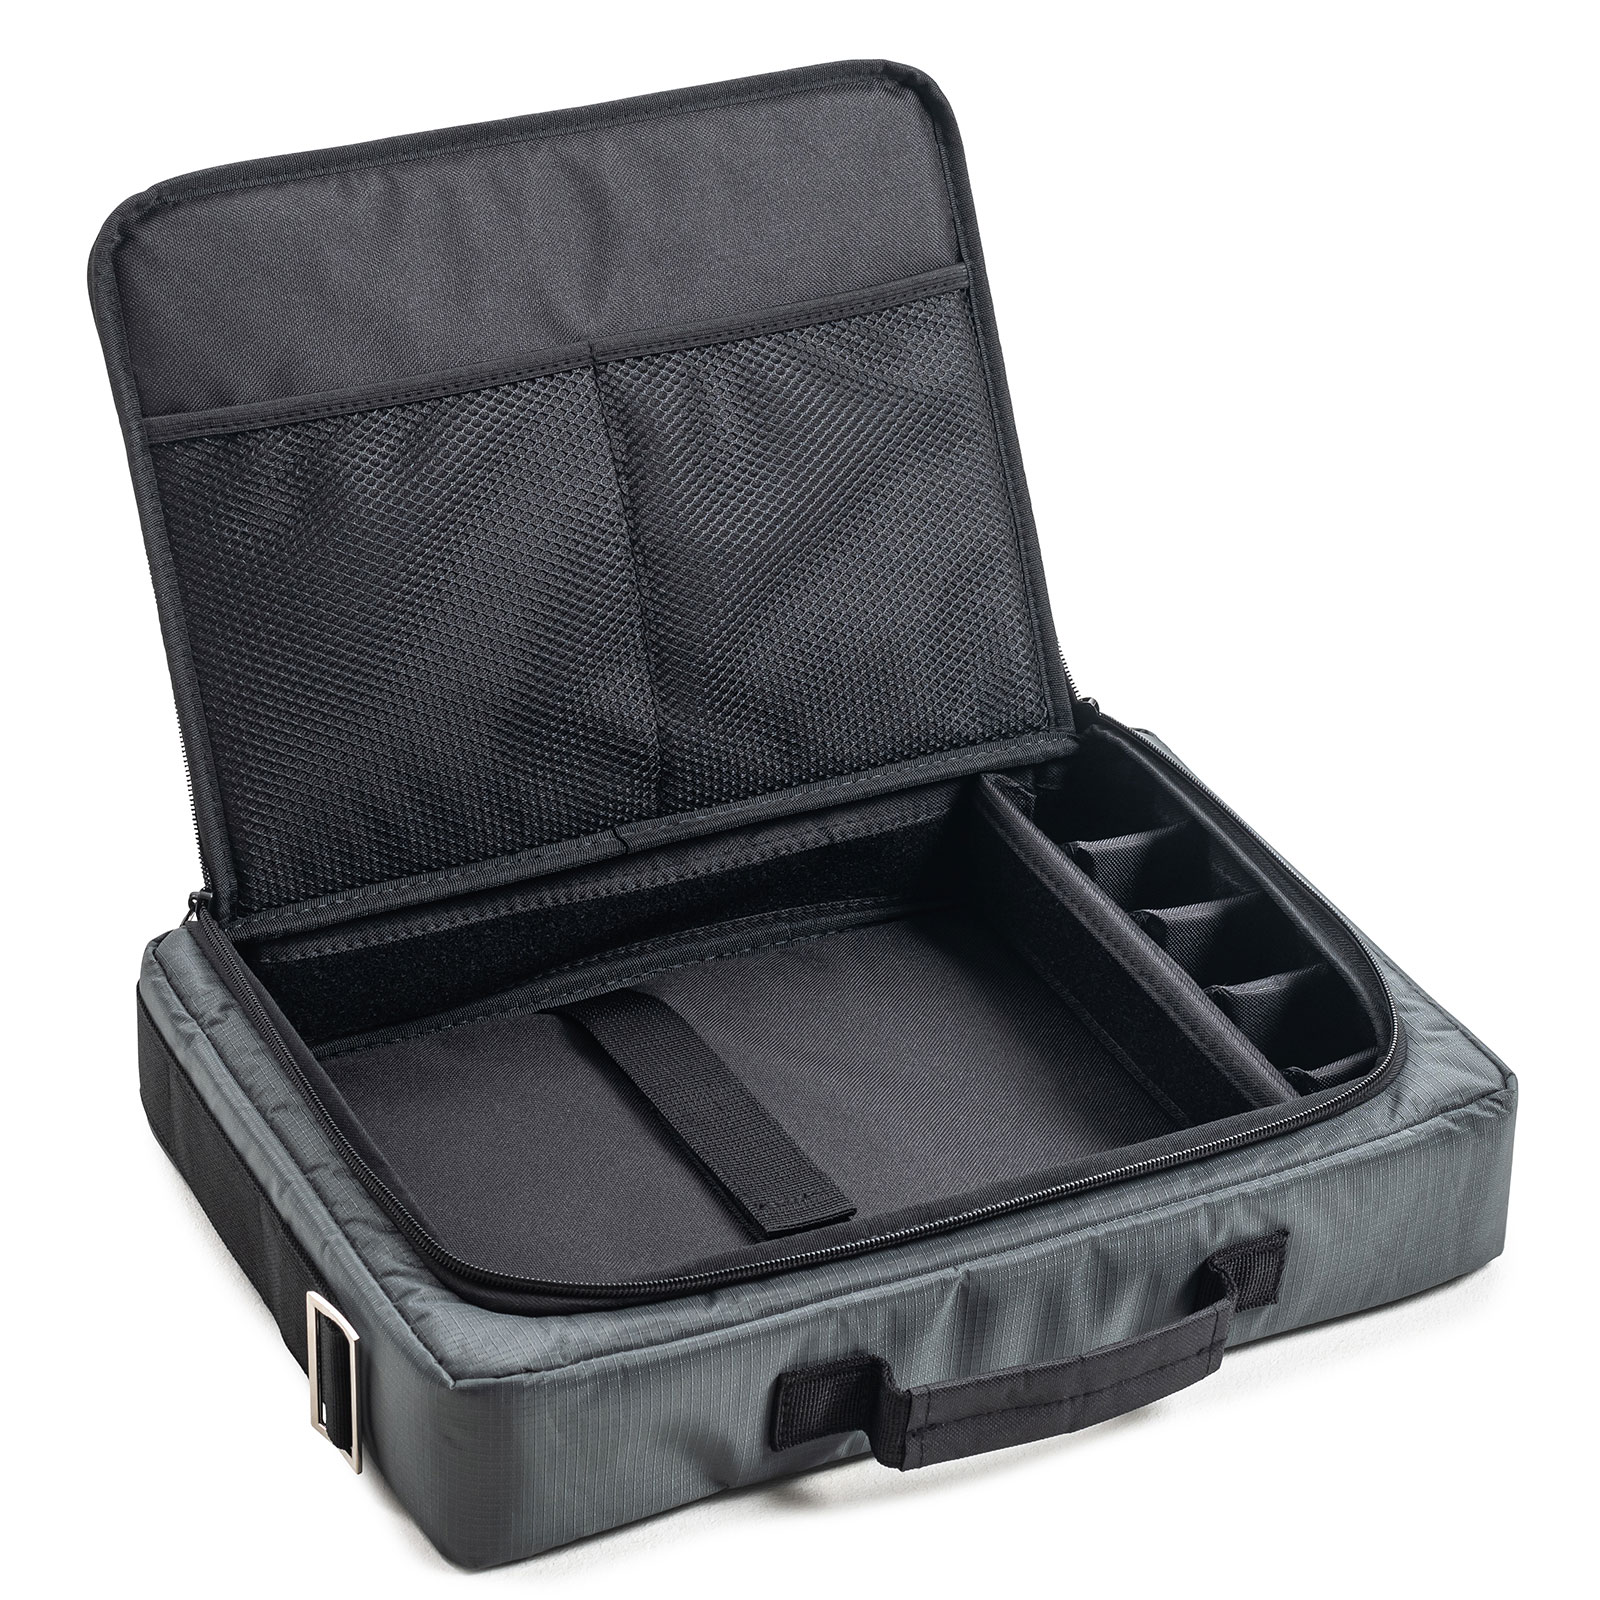 B&W Laptoptasche mit variabler Facheinteilung und Laptopfach für, Outdoor